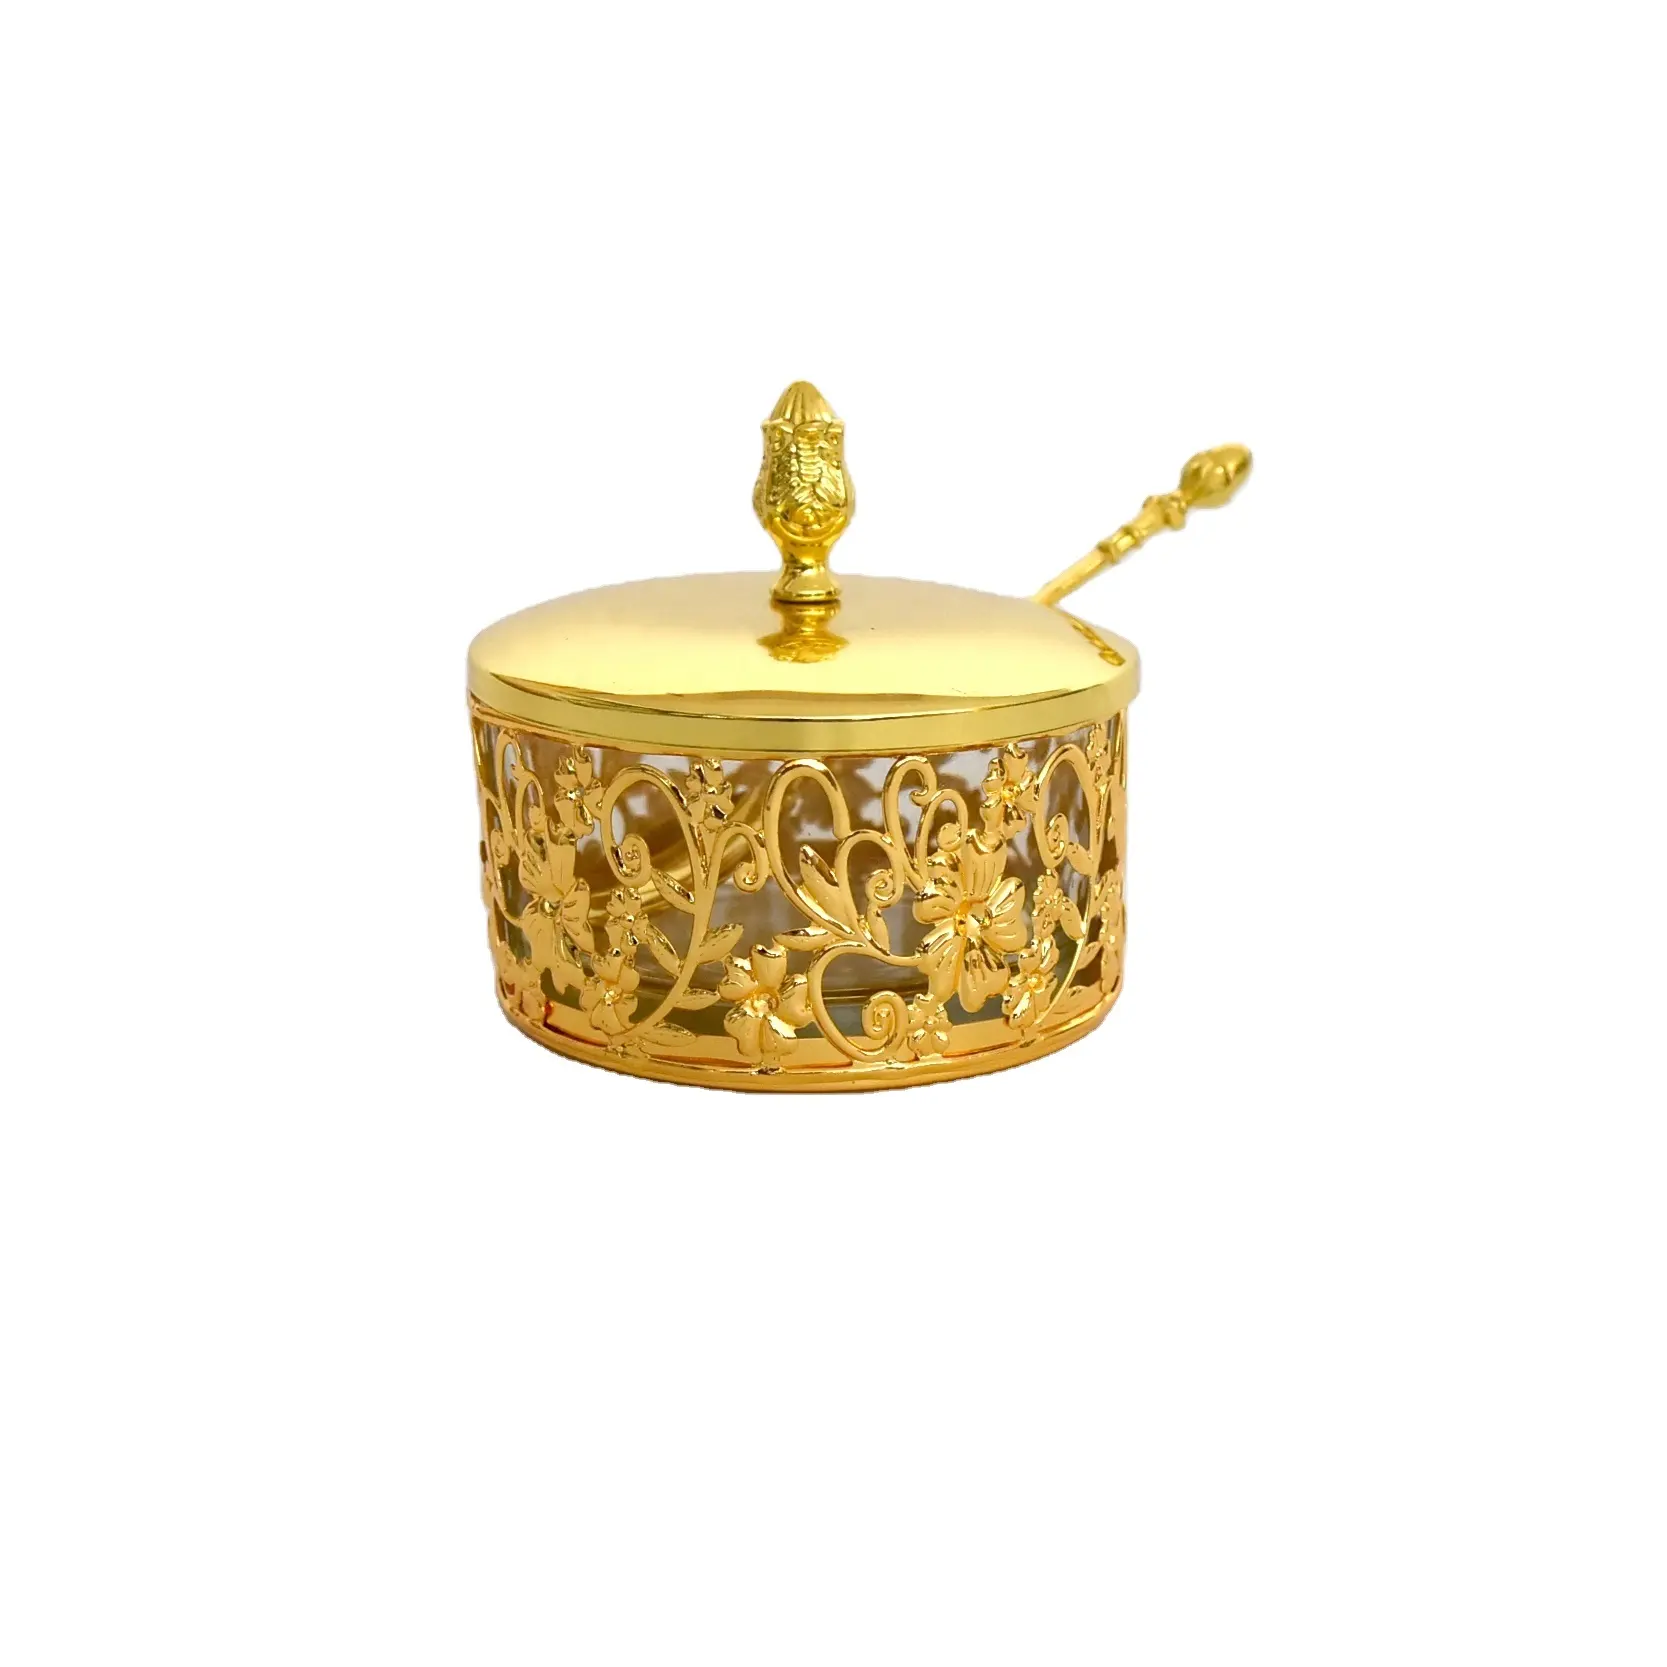 Gold plated flower pot set housewarming return gift dinnerware candy sugar pot